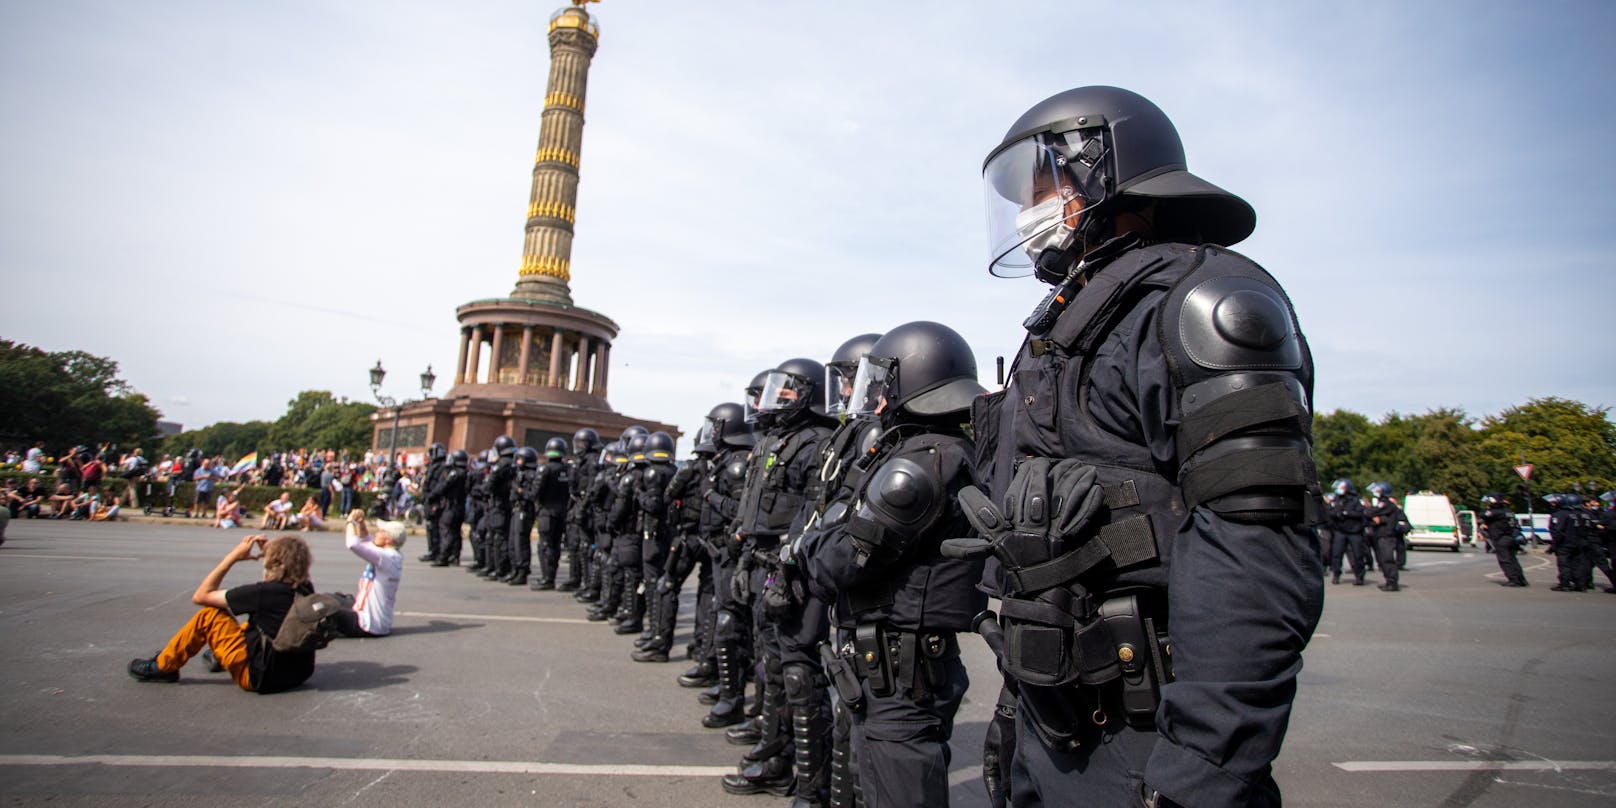 Die Polizei zeigt bei neuerlichen Demonstrationen Präsenz. (Bild wurde am Sonntag, 30.08.2020 aufgenommen).